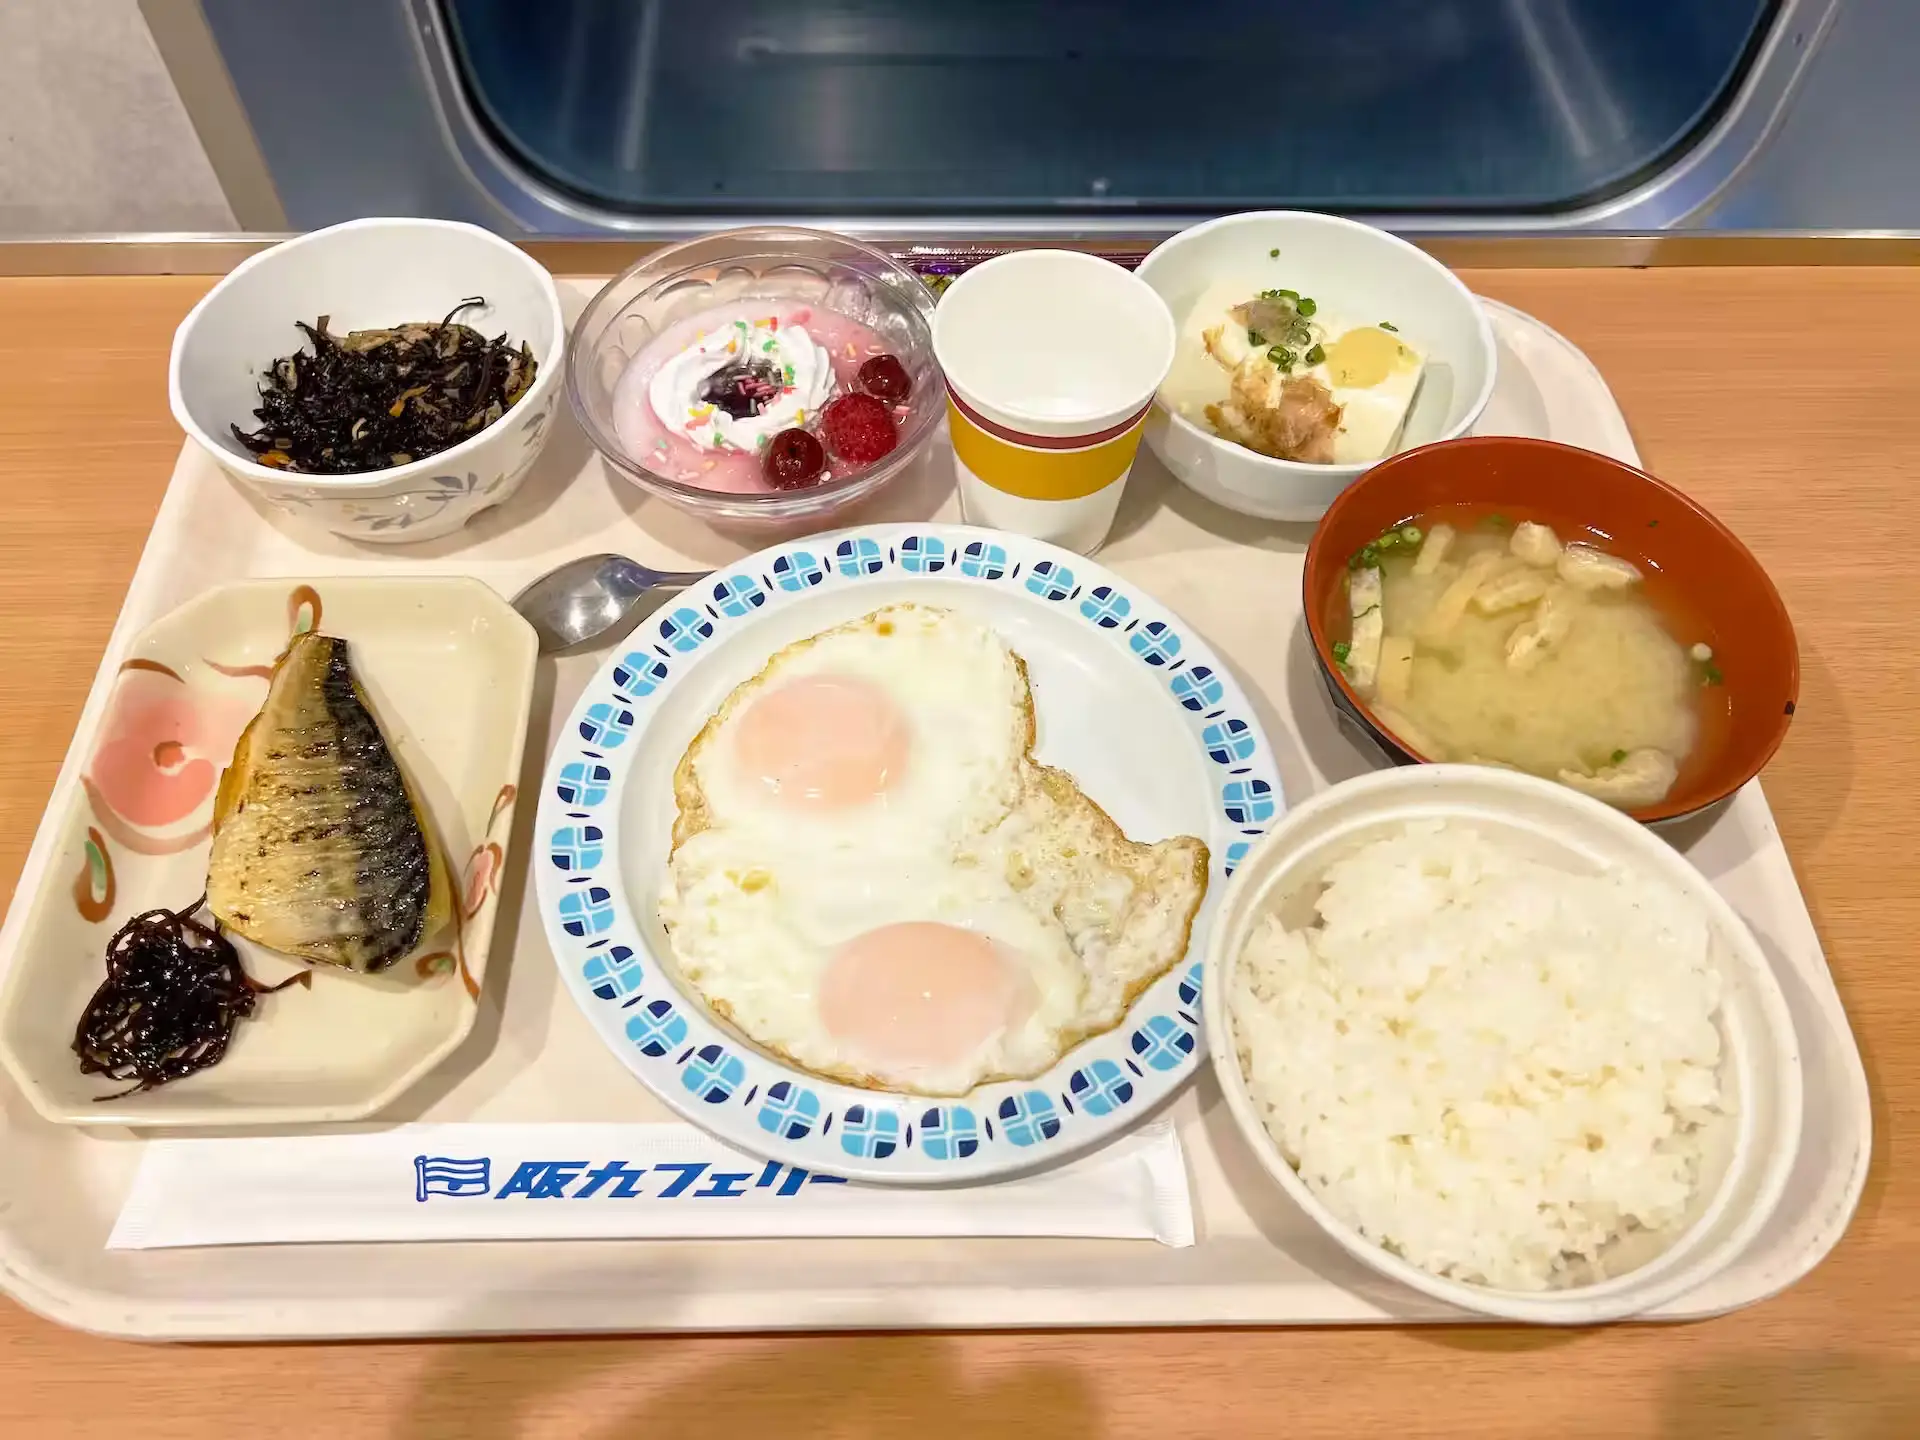 阪九フェリーひびき船内レストランの朝食料理